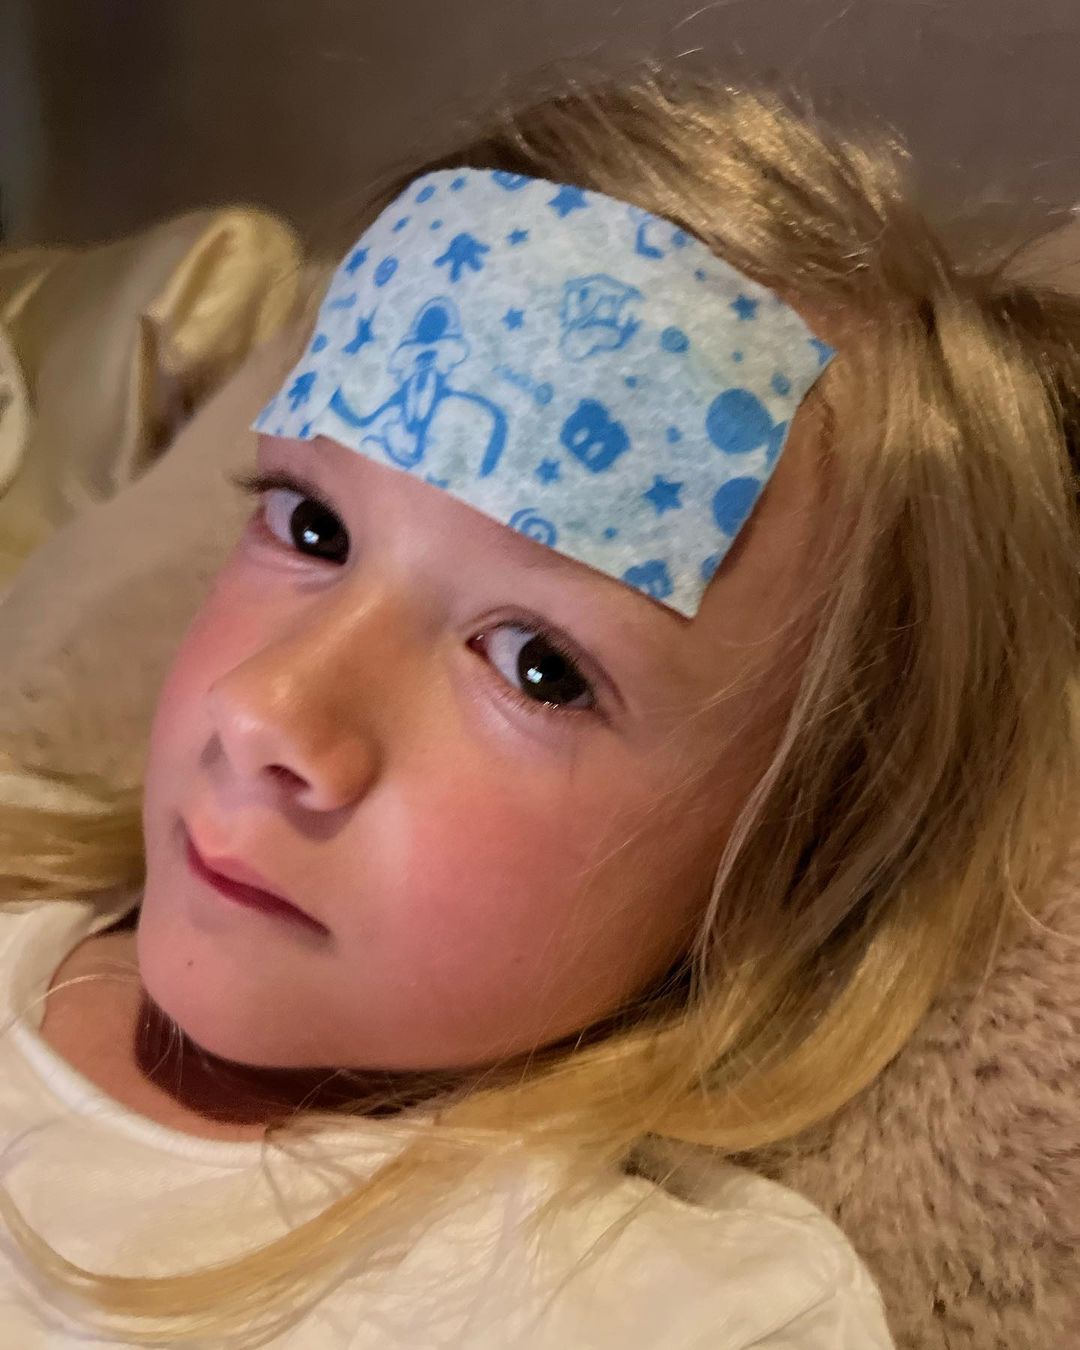 El hijo enfermo de Tori Spelling tras exponerse al moho, de un post de Instagram del 11 de mayo de 2023 | Fuente: Instagram/torispelling/